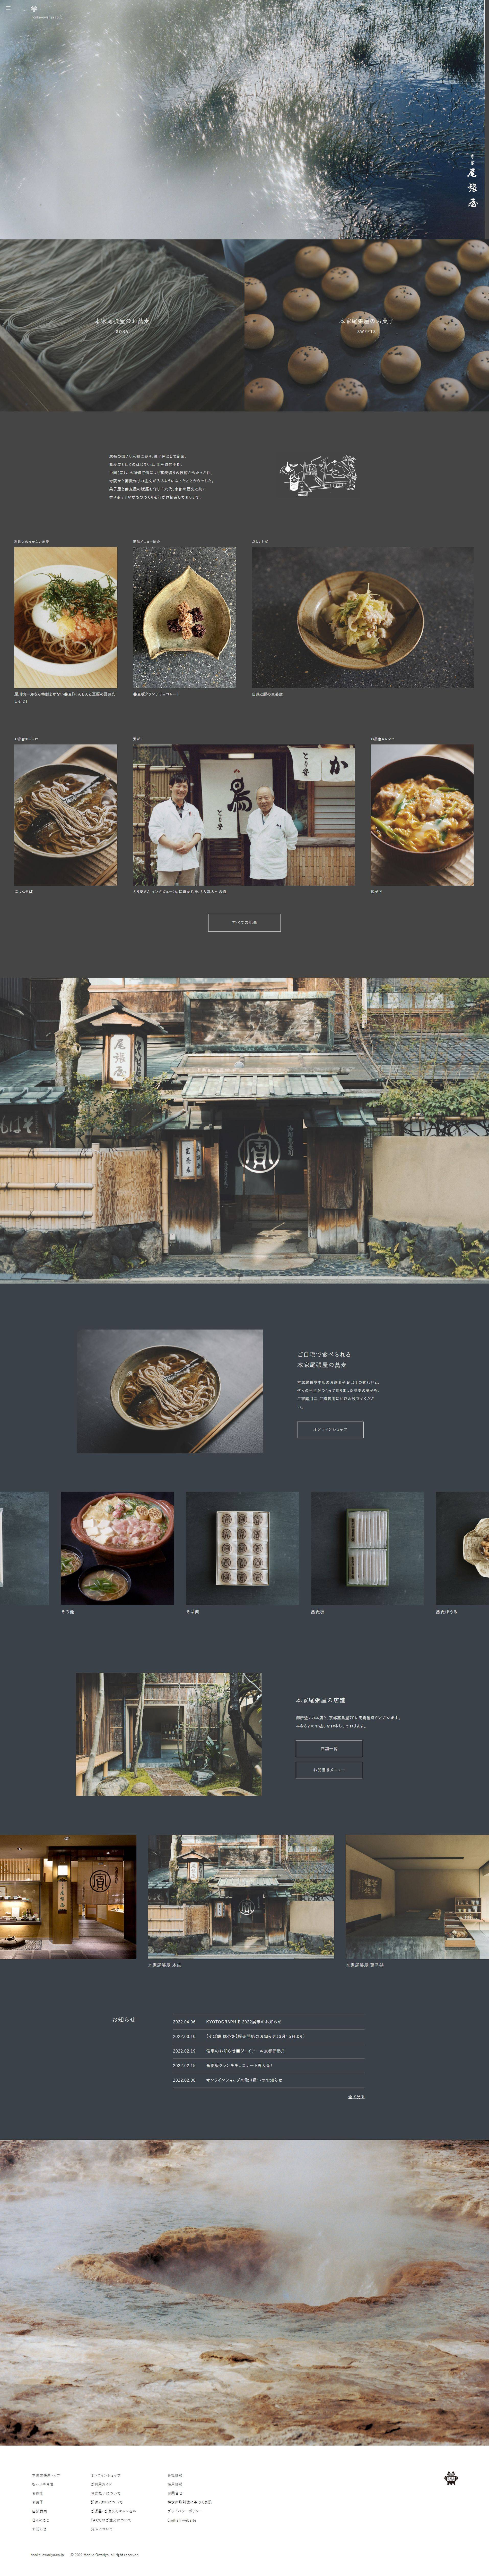 精美html日式美食餐厅网站整套模板